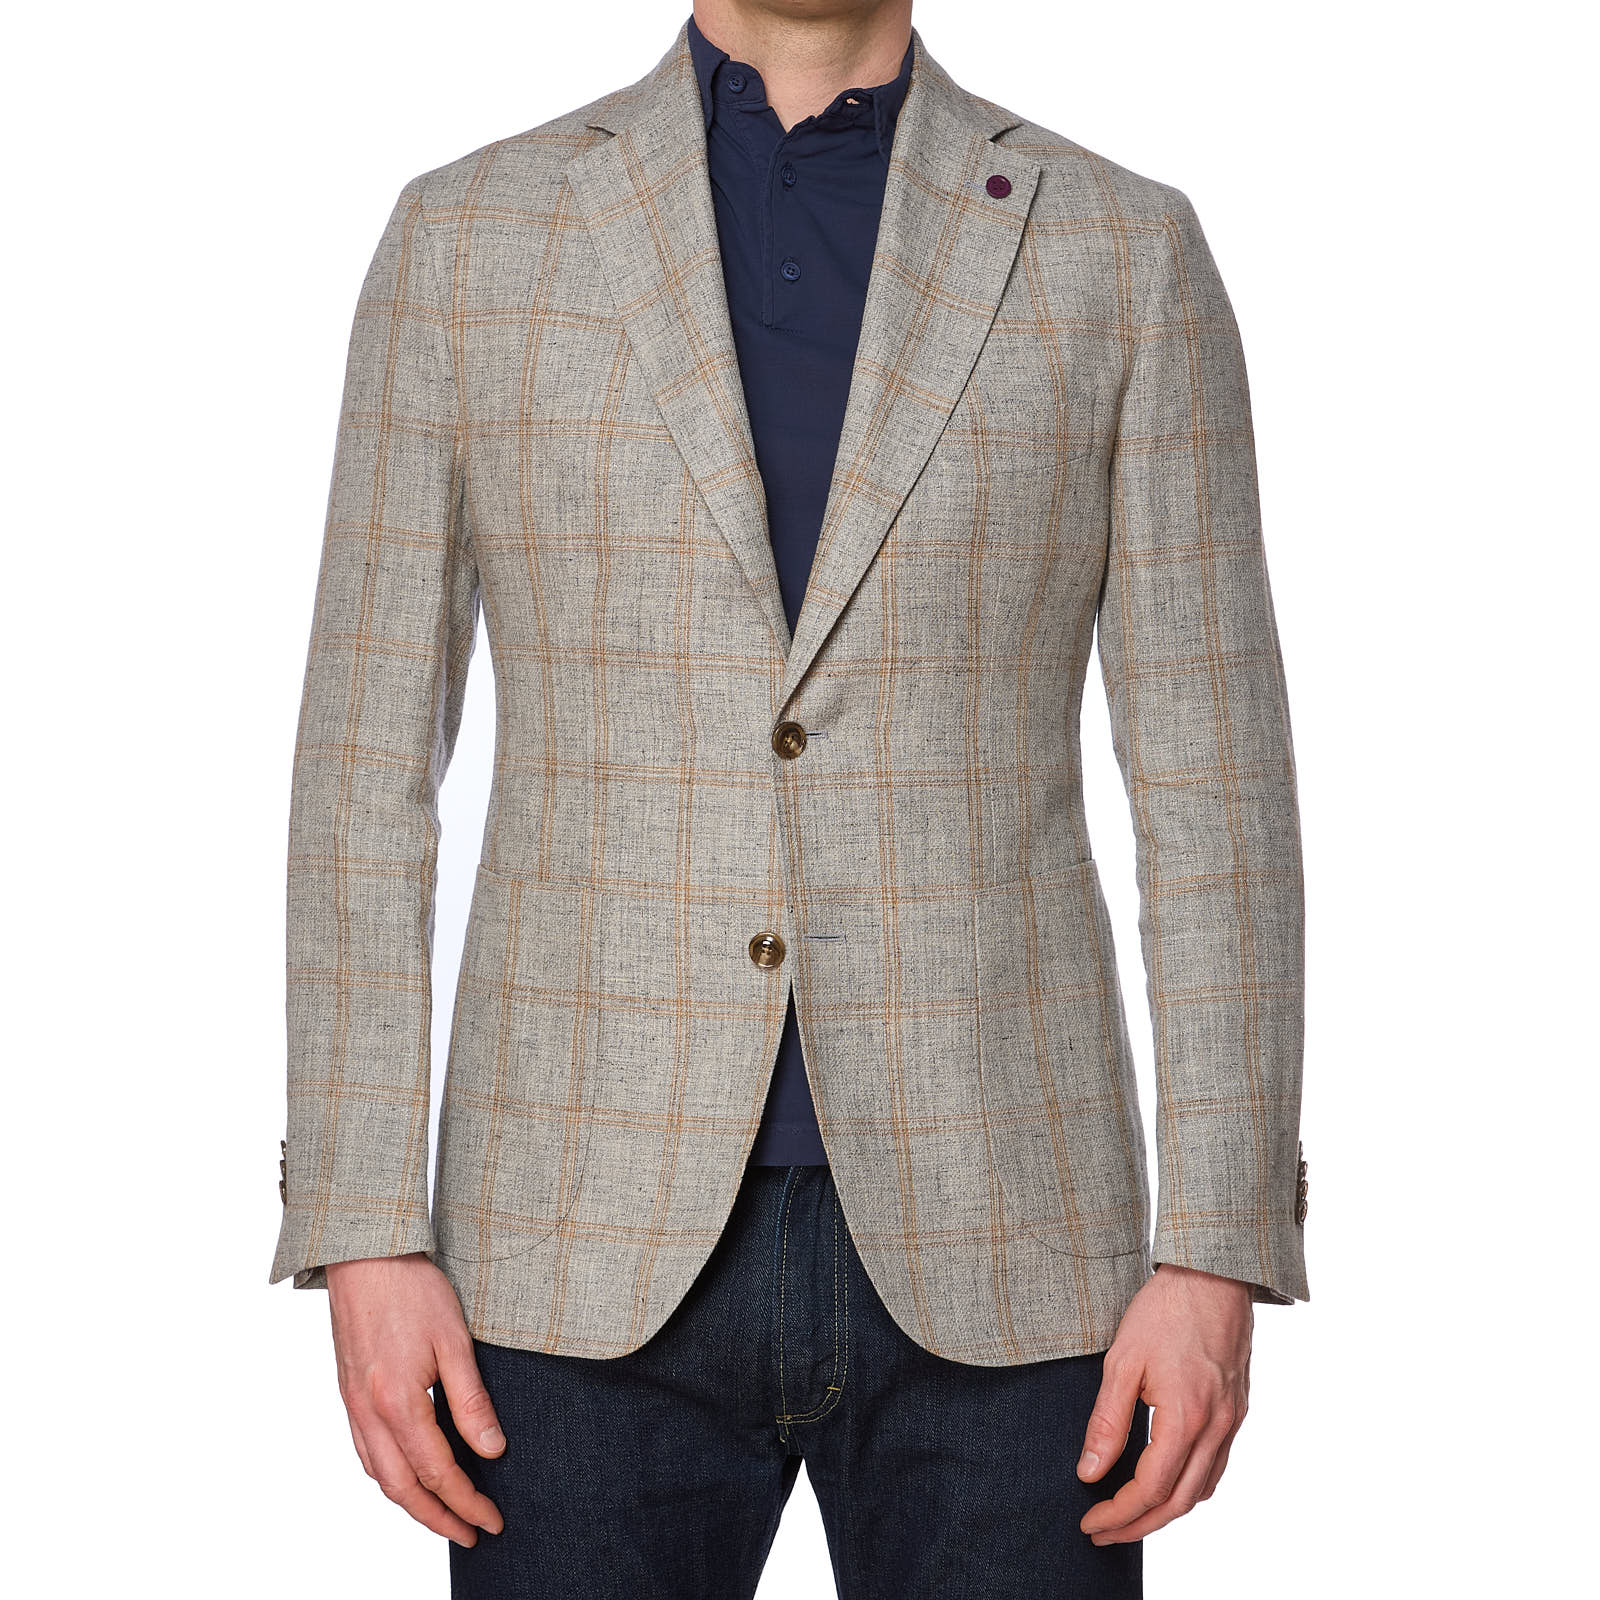 SARTORIA PARTENOPEA Gray Plaid Linen-Cotton Jacket NEW Current Model